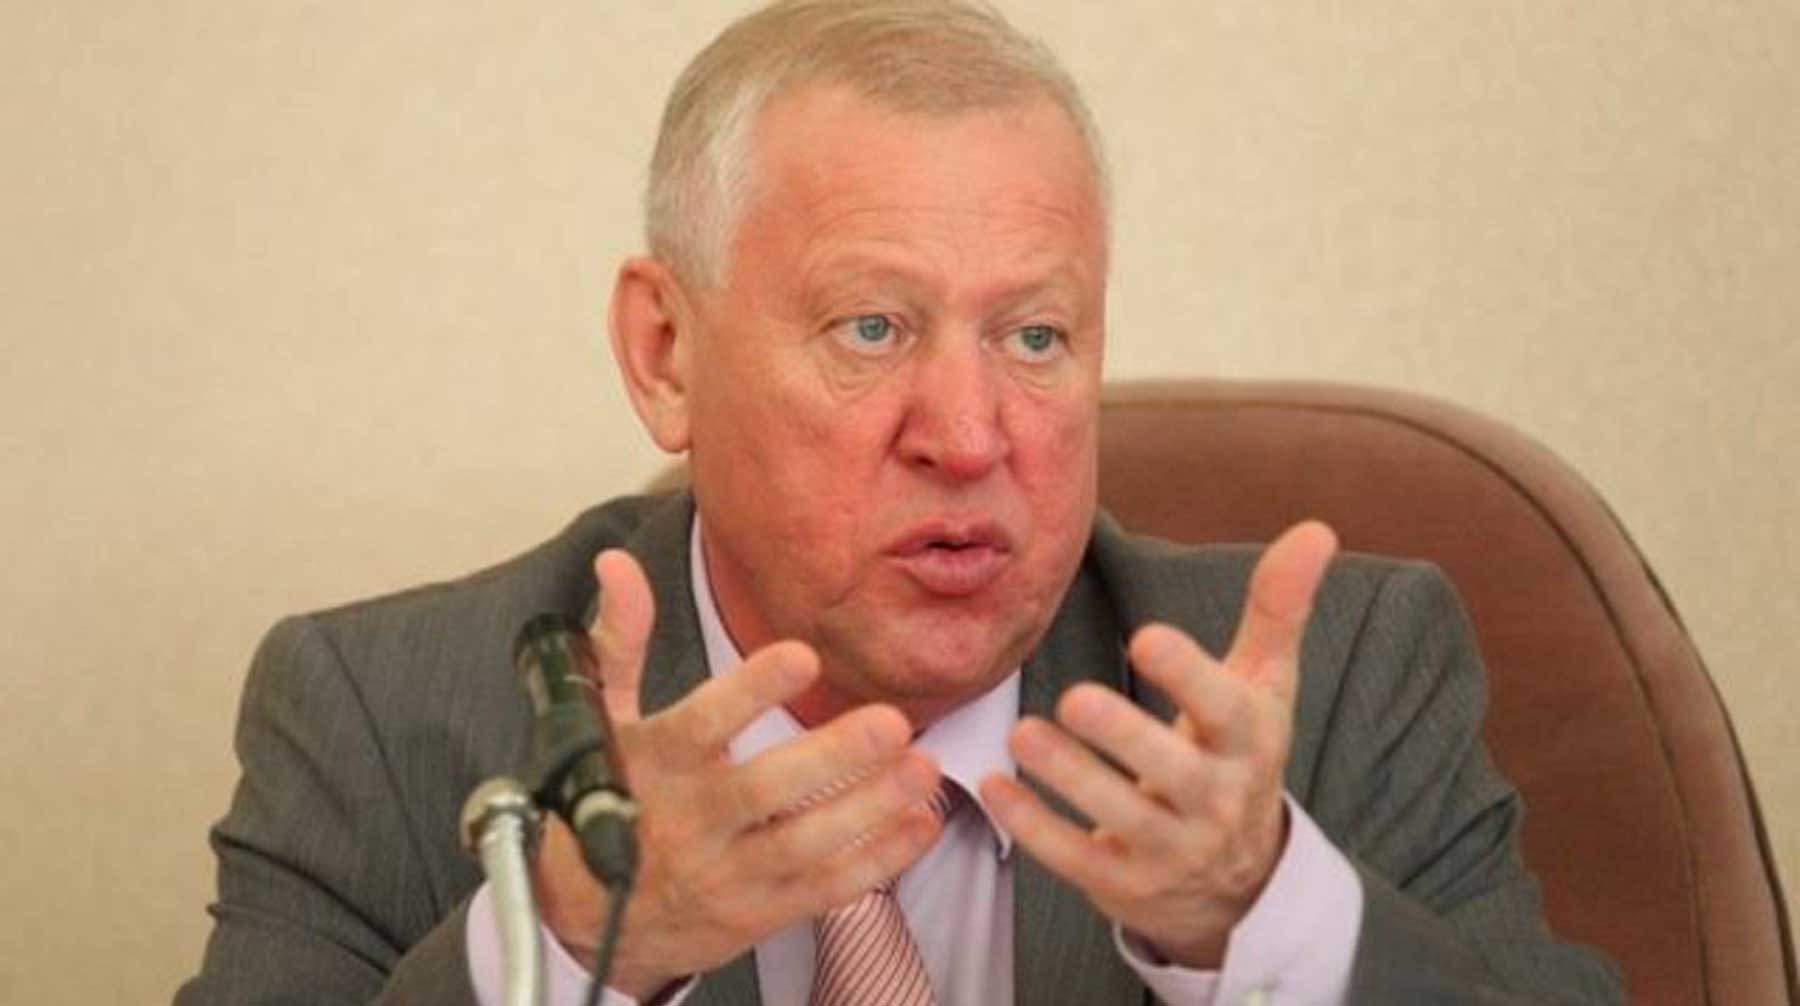 Dailystorm - СМИ: ФСБ задержала бывшего вице-губернатора Челябинской области